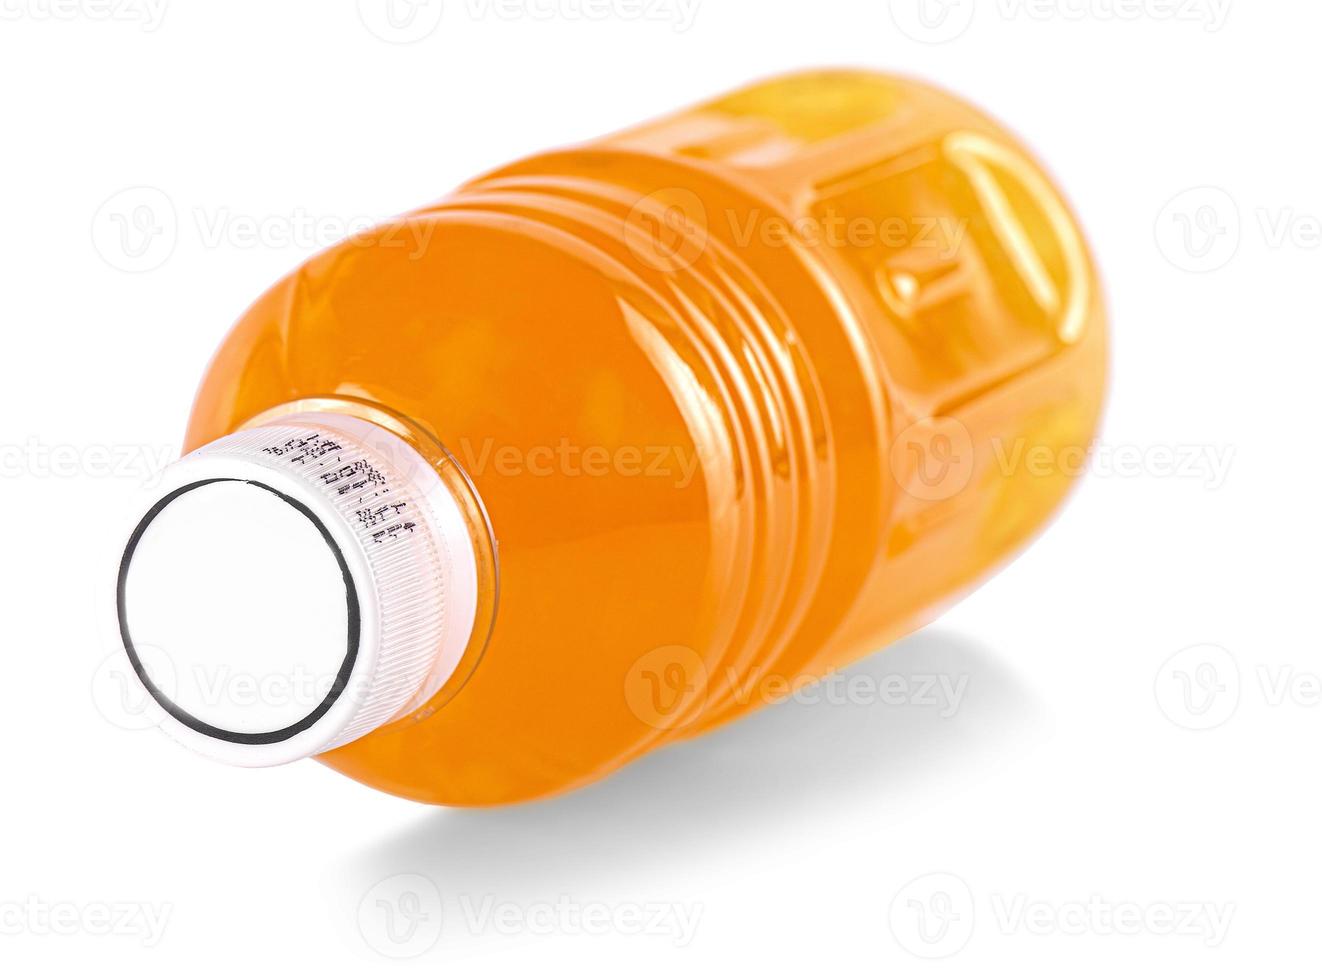 bouteille en verre de jus d'orange avec couvercle blanc. isolé sur fond blanc photo